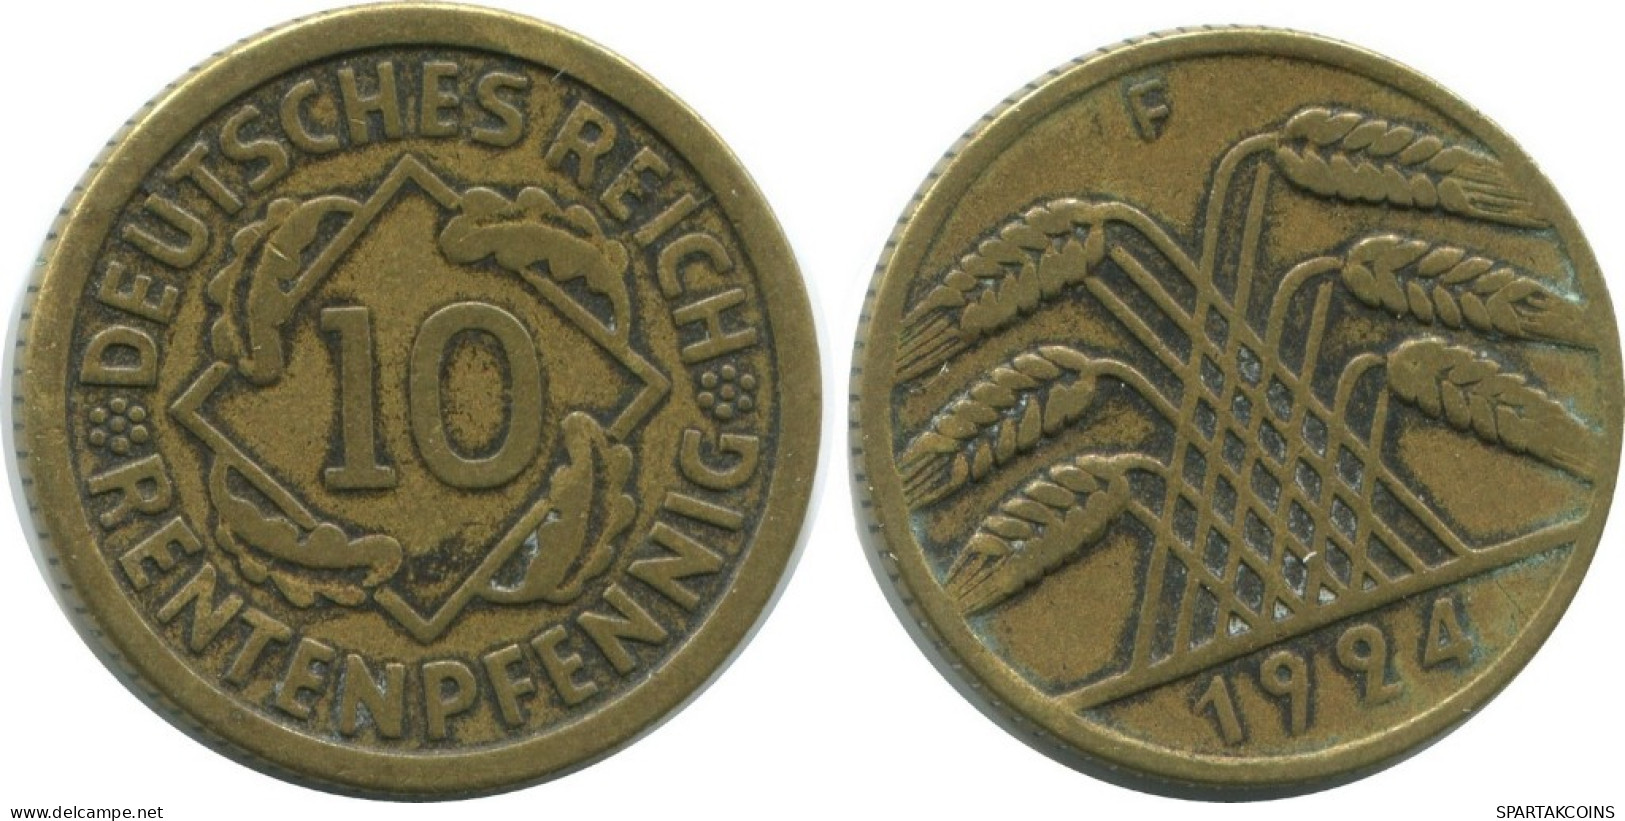 10 RENTENPFENNIG 1924 F ALEMANIA Moneda GERMANY #AD583.9.E.A - 10 Rentenpfennig & 10 Reichspfennig